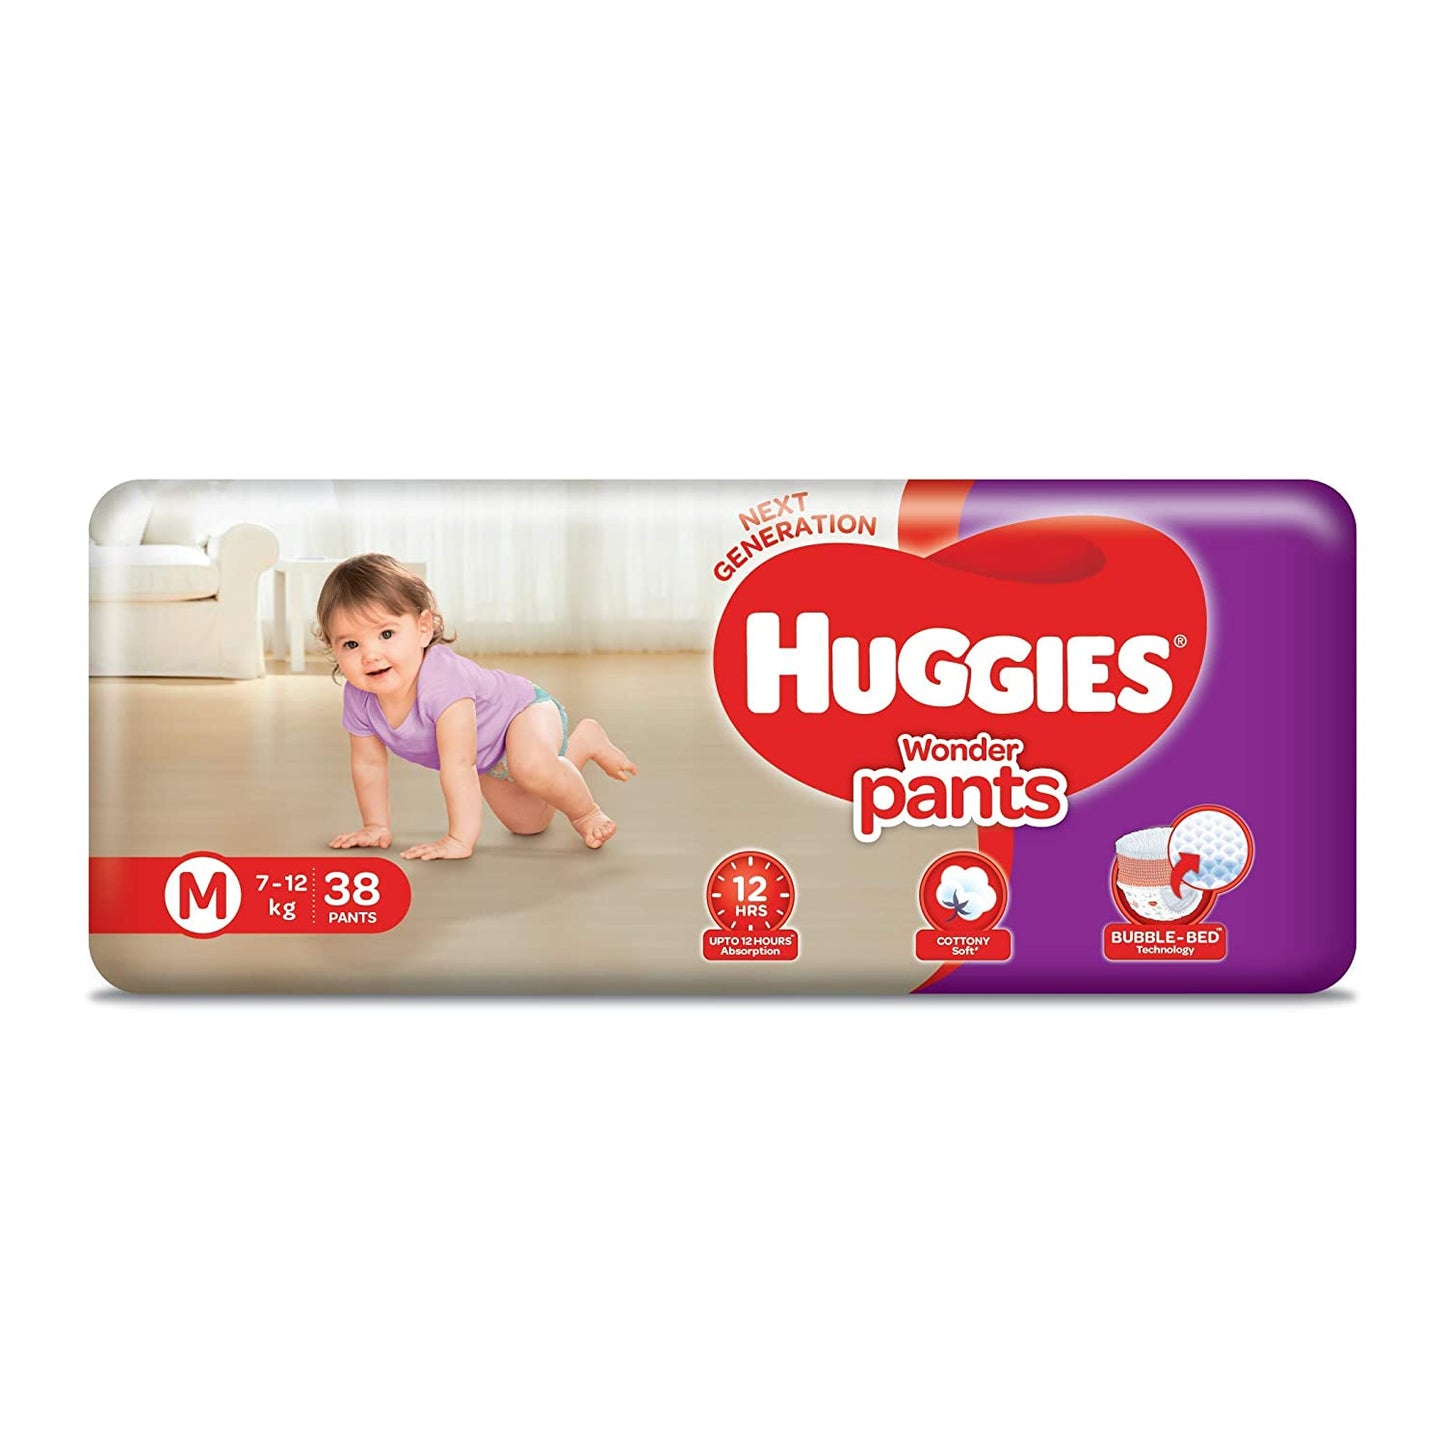 Huggies Wonder Pants, Medium (7-12 Kg) - Pack of 38